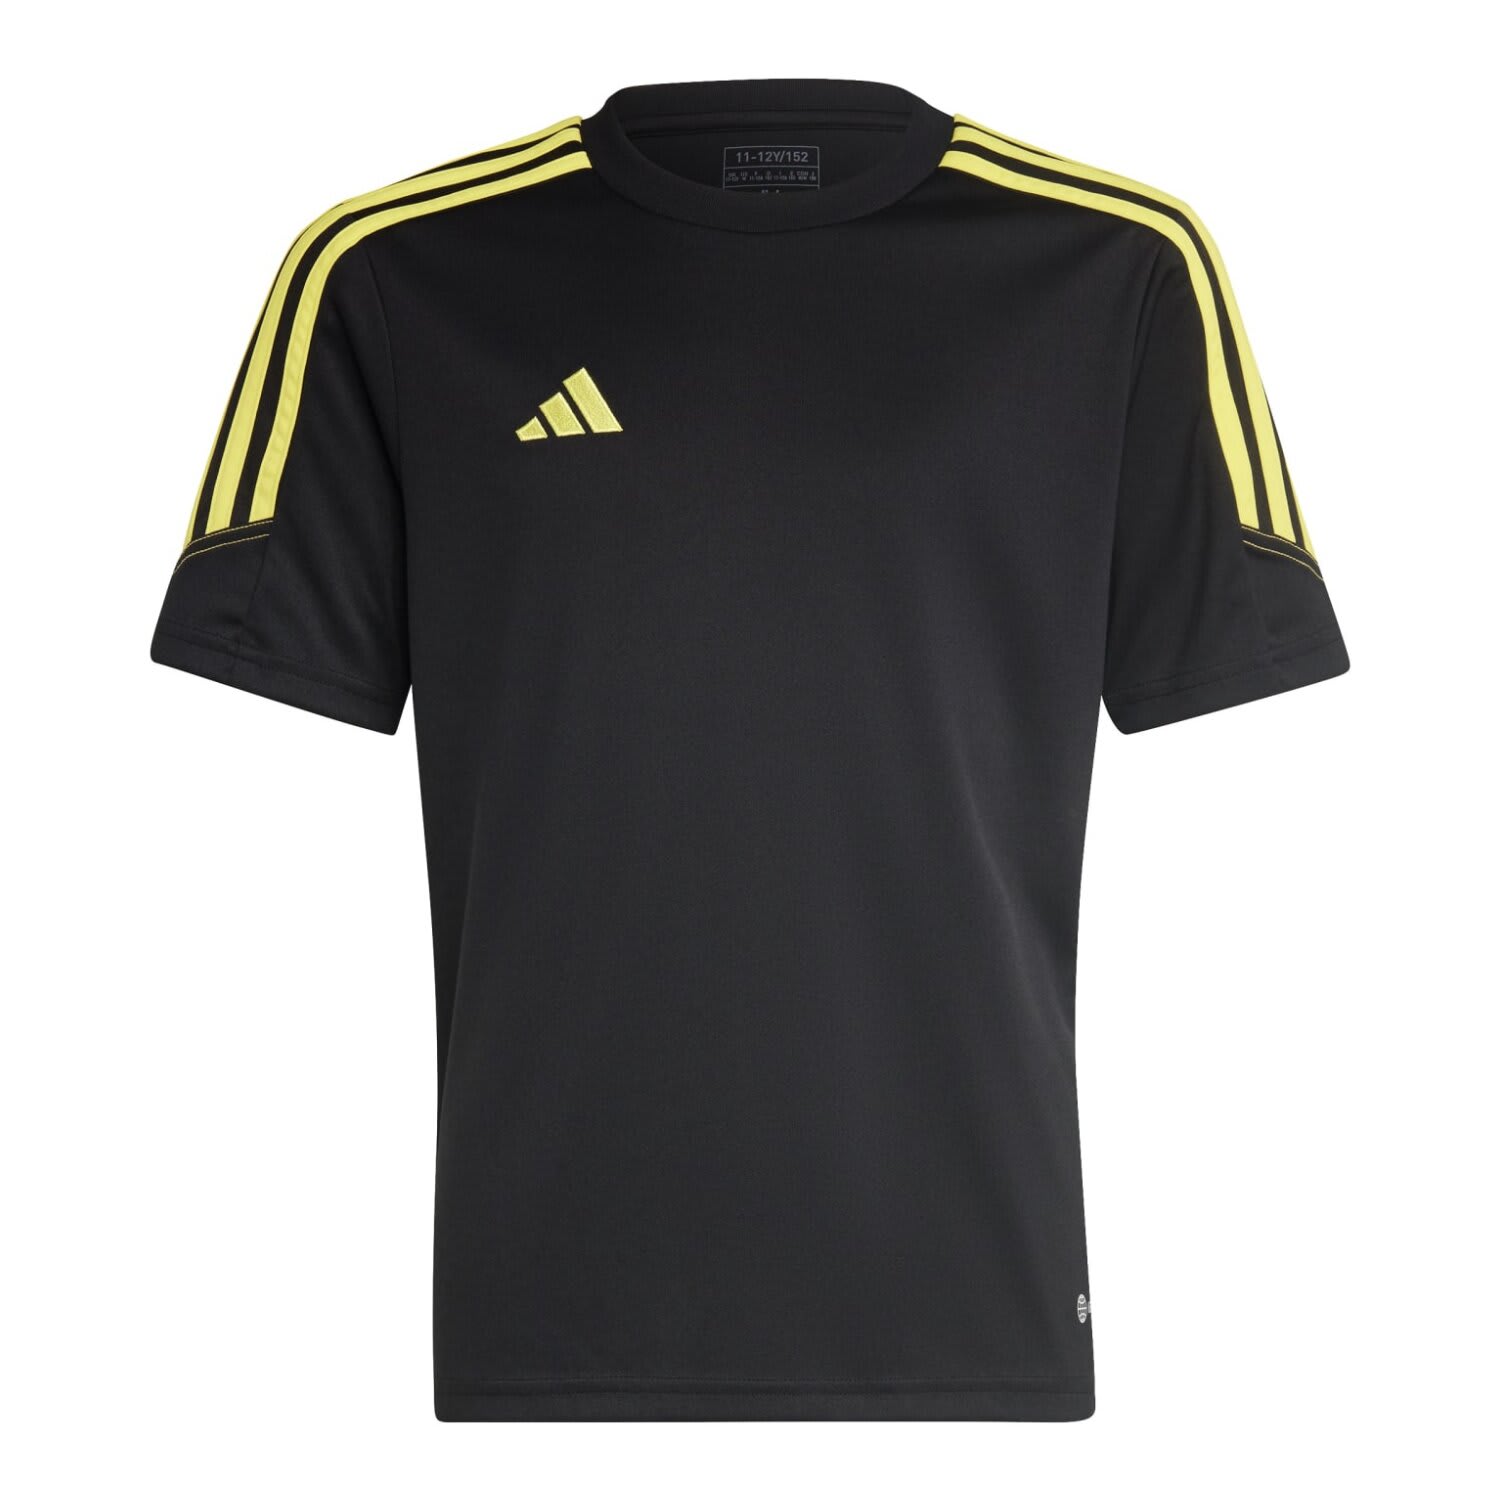 Adidas Youth Tiro Jersey | by adidas | Price: R 299,9 | PLU 1164554 ...